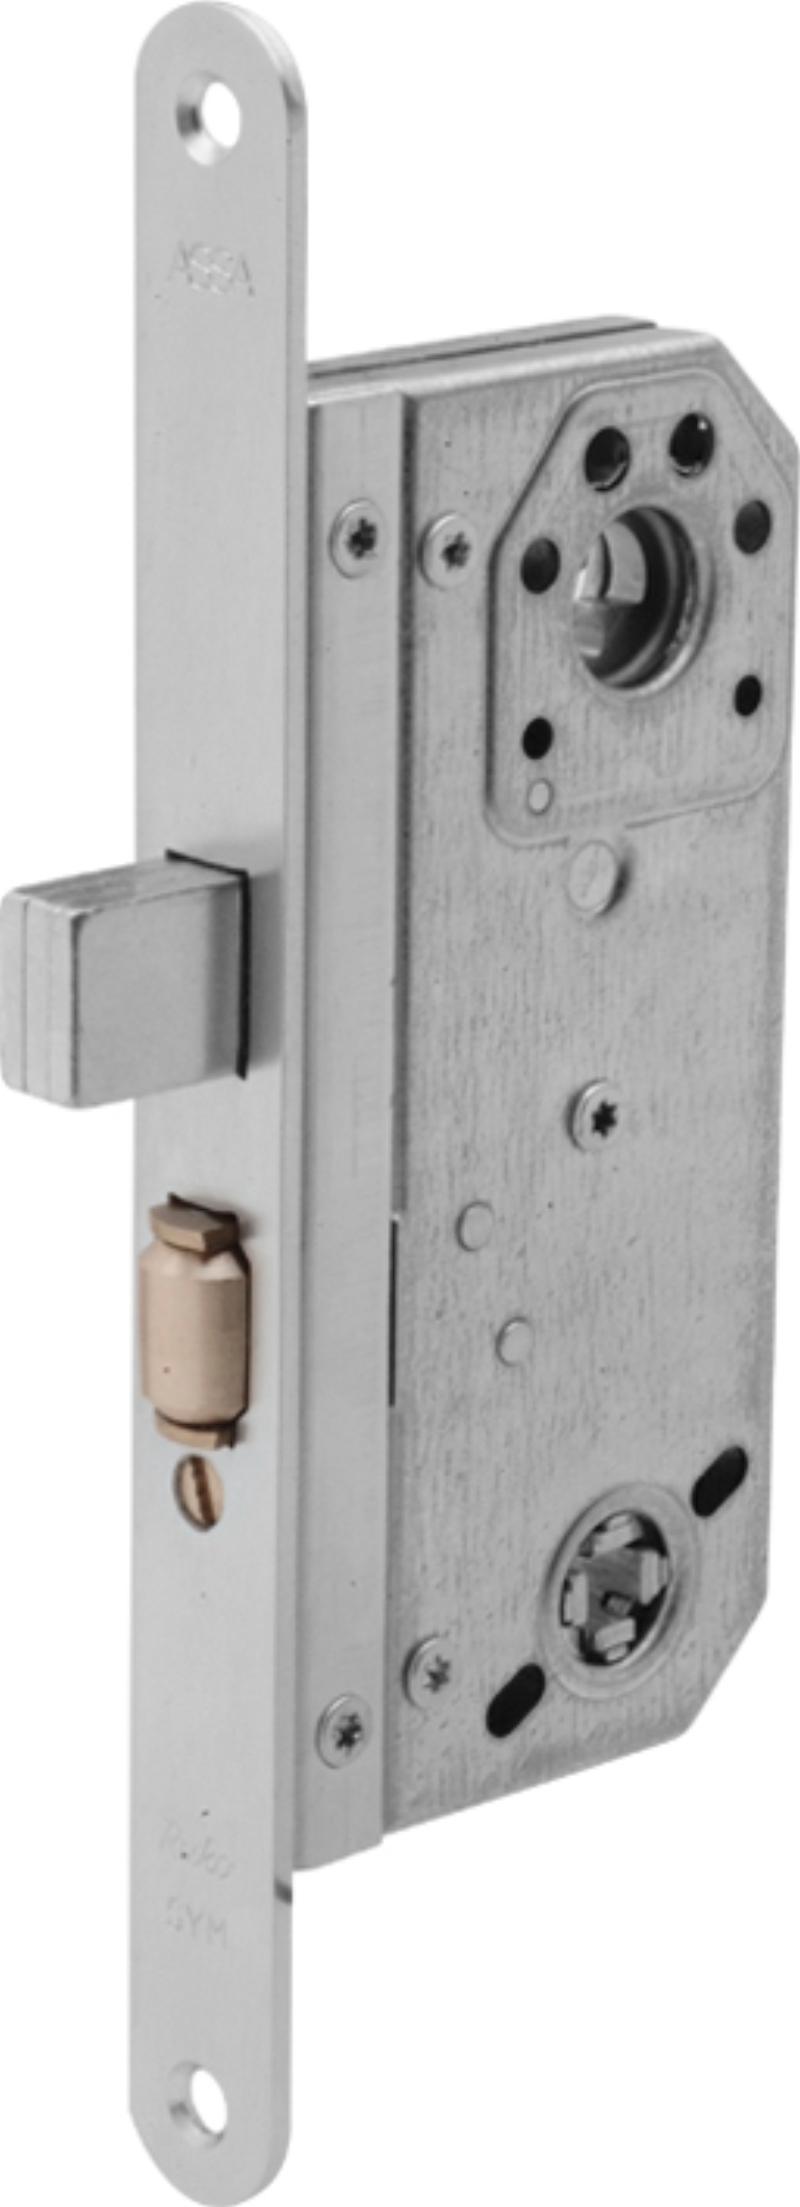 Assa lock box 566 w/tin (520640)